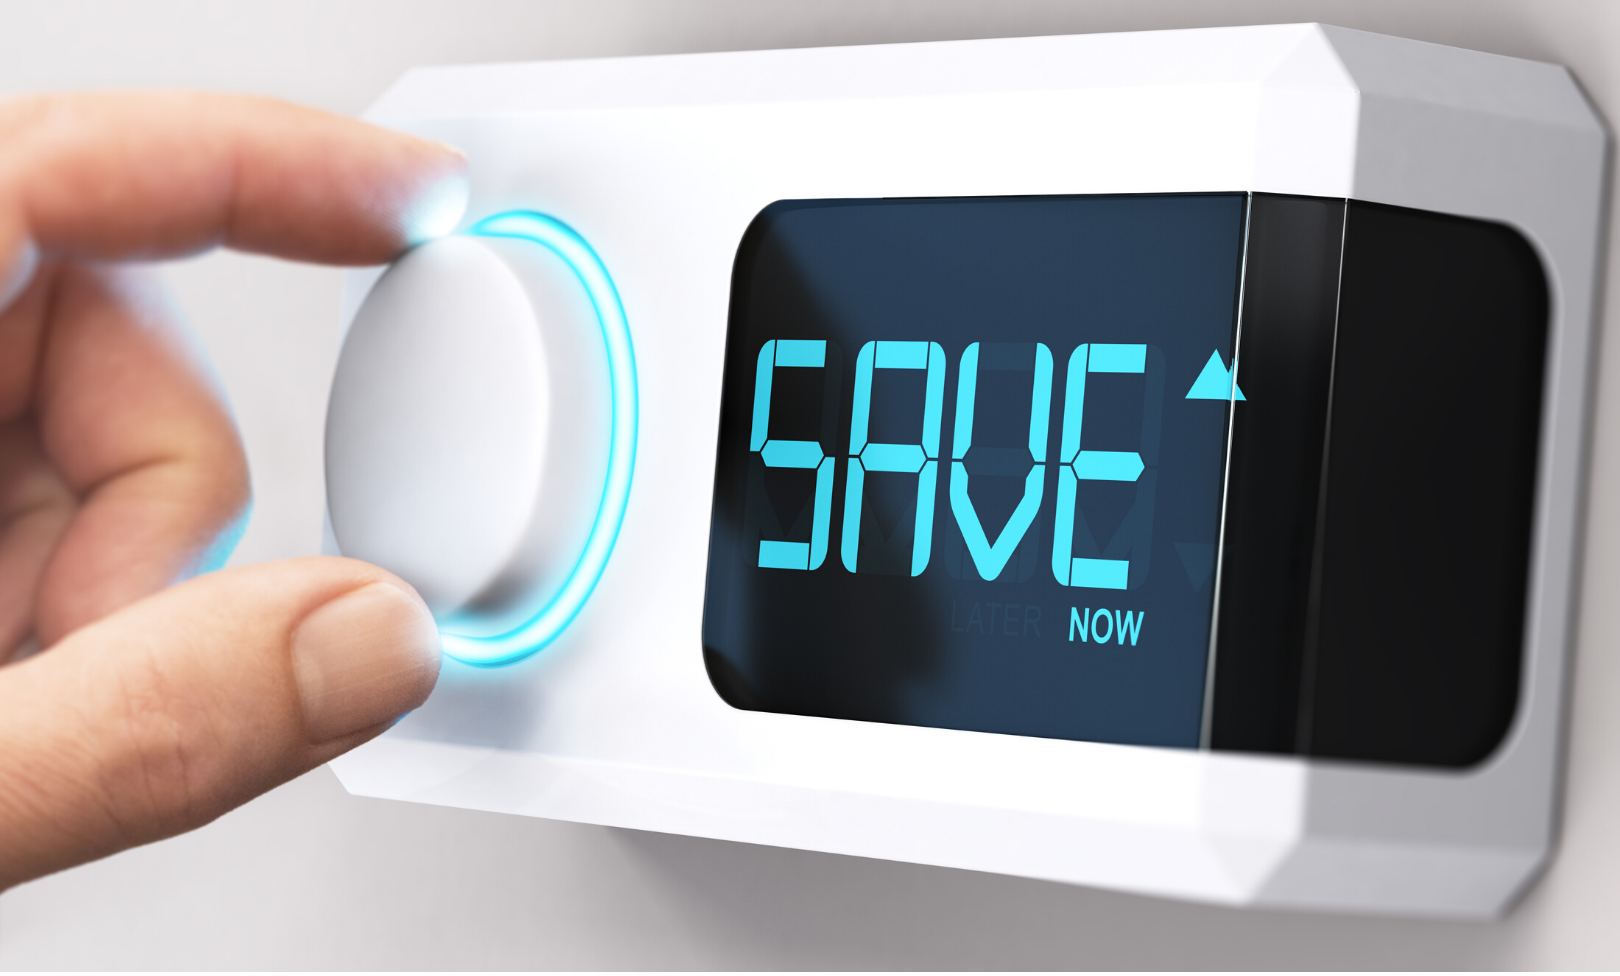 Dispositivi di risparmio energetico: il termostato intelligente